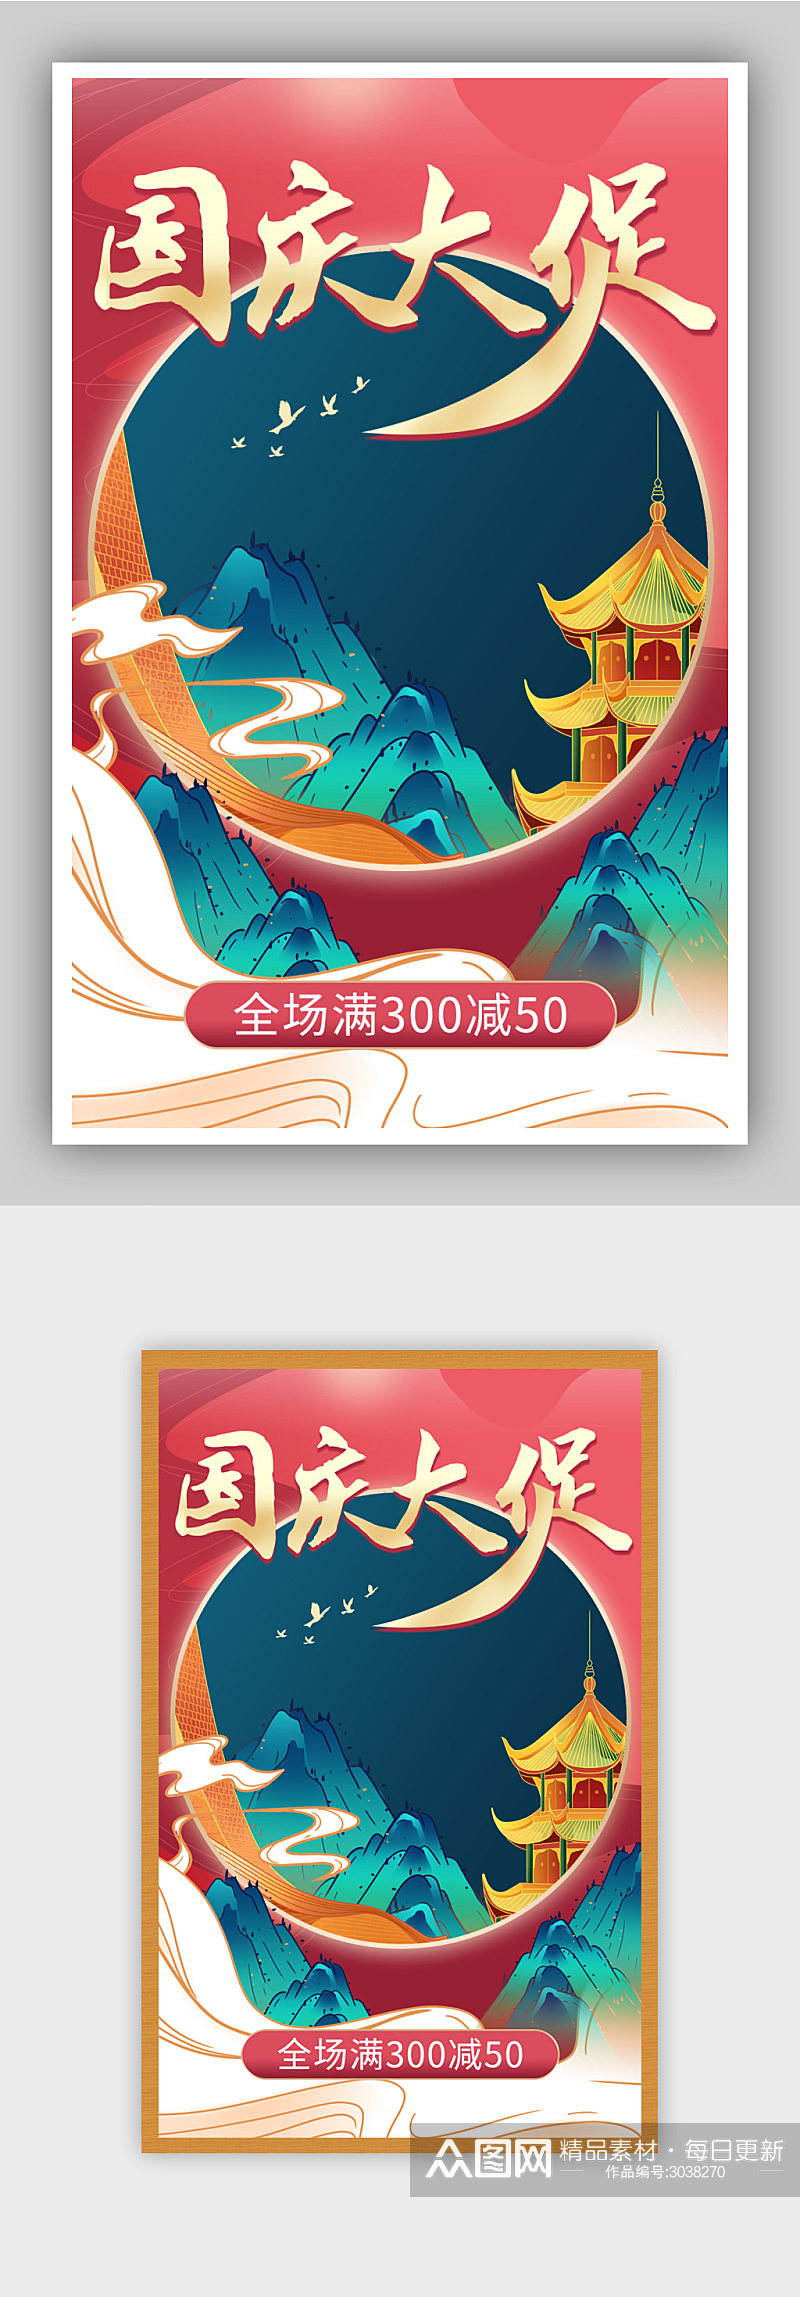 中国风国庆节十一大促通用海报素材